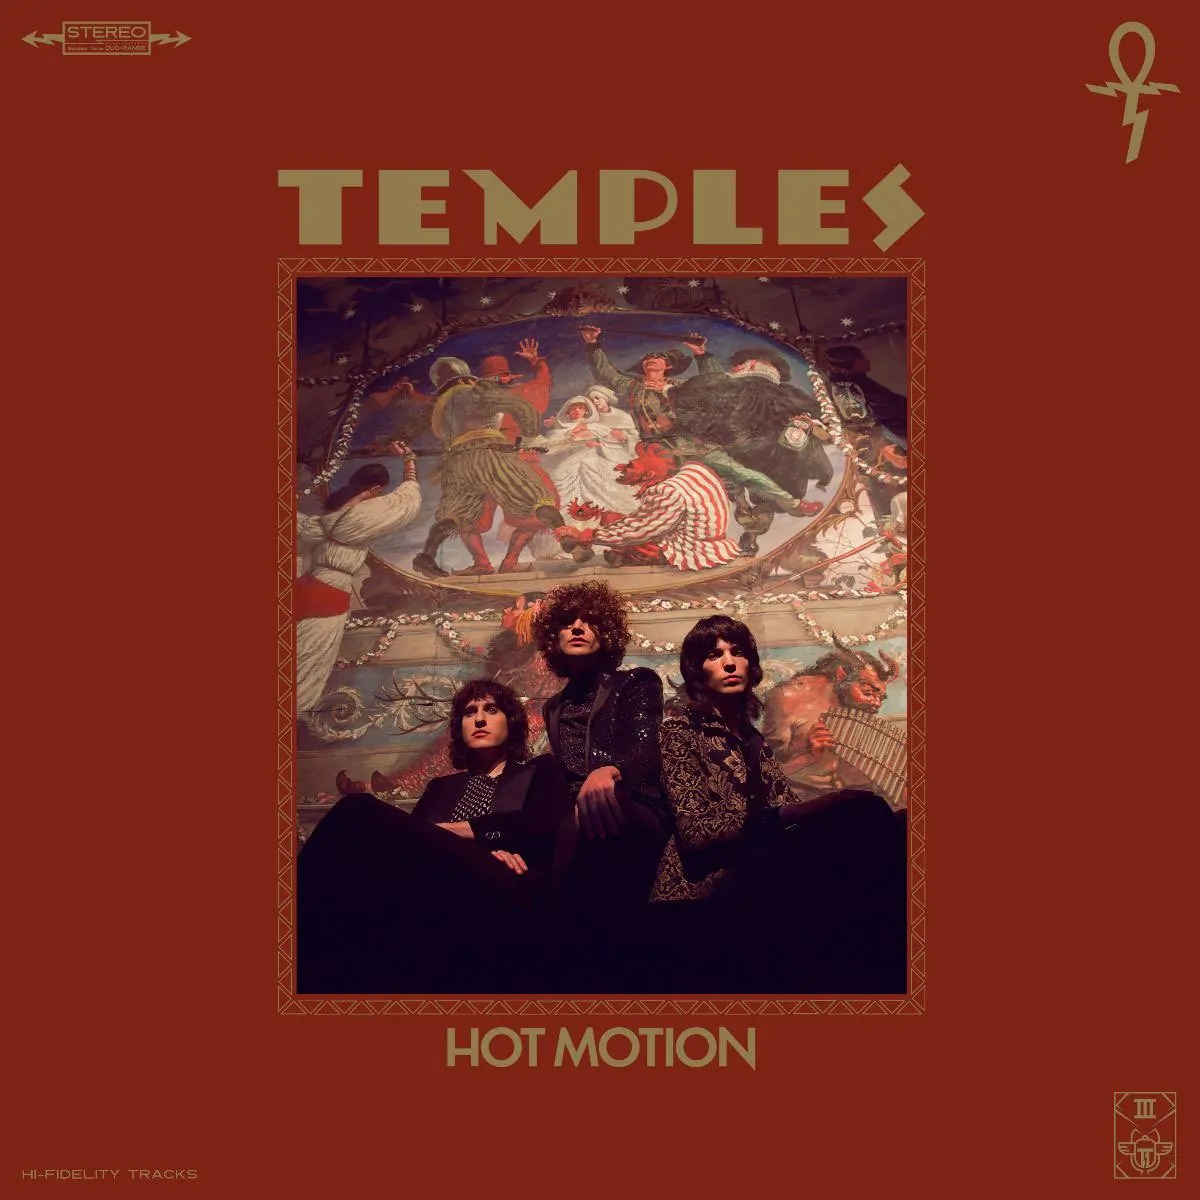 ALBUM REVIEW: Temples – Hot Motion